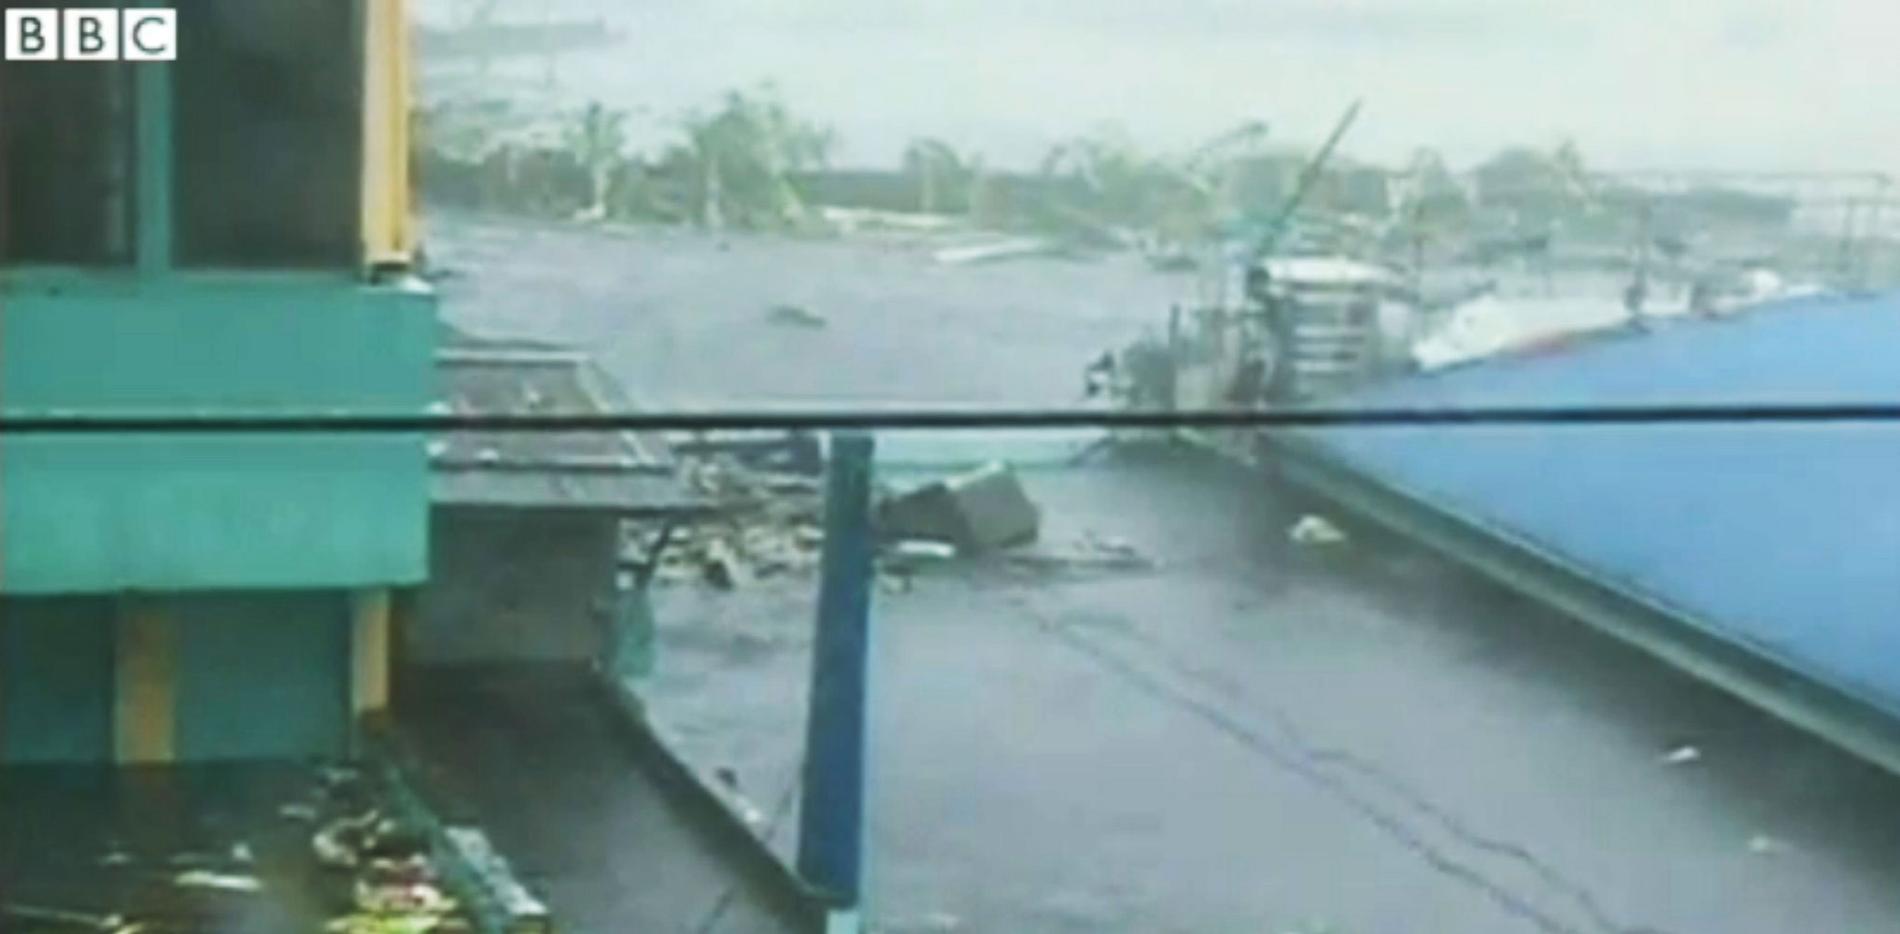 En video från BBC visar de enorma vassorna som vällde in i samband med tyfonen.